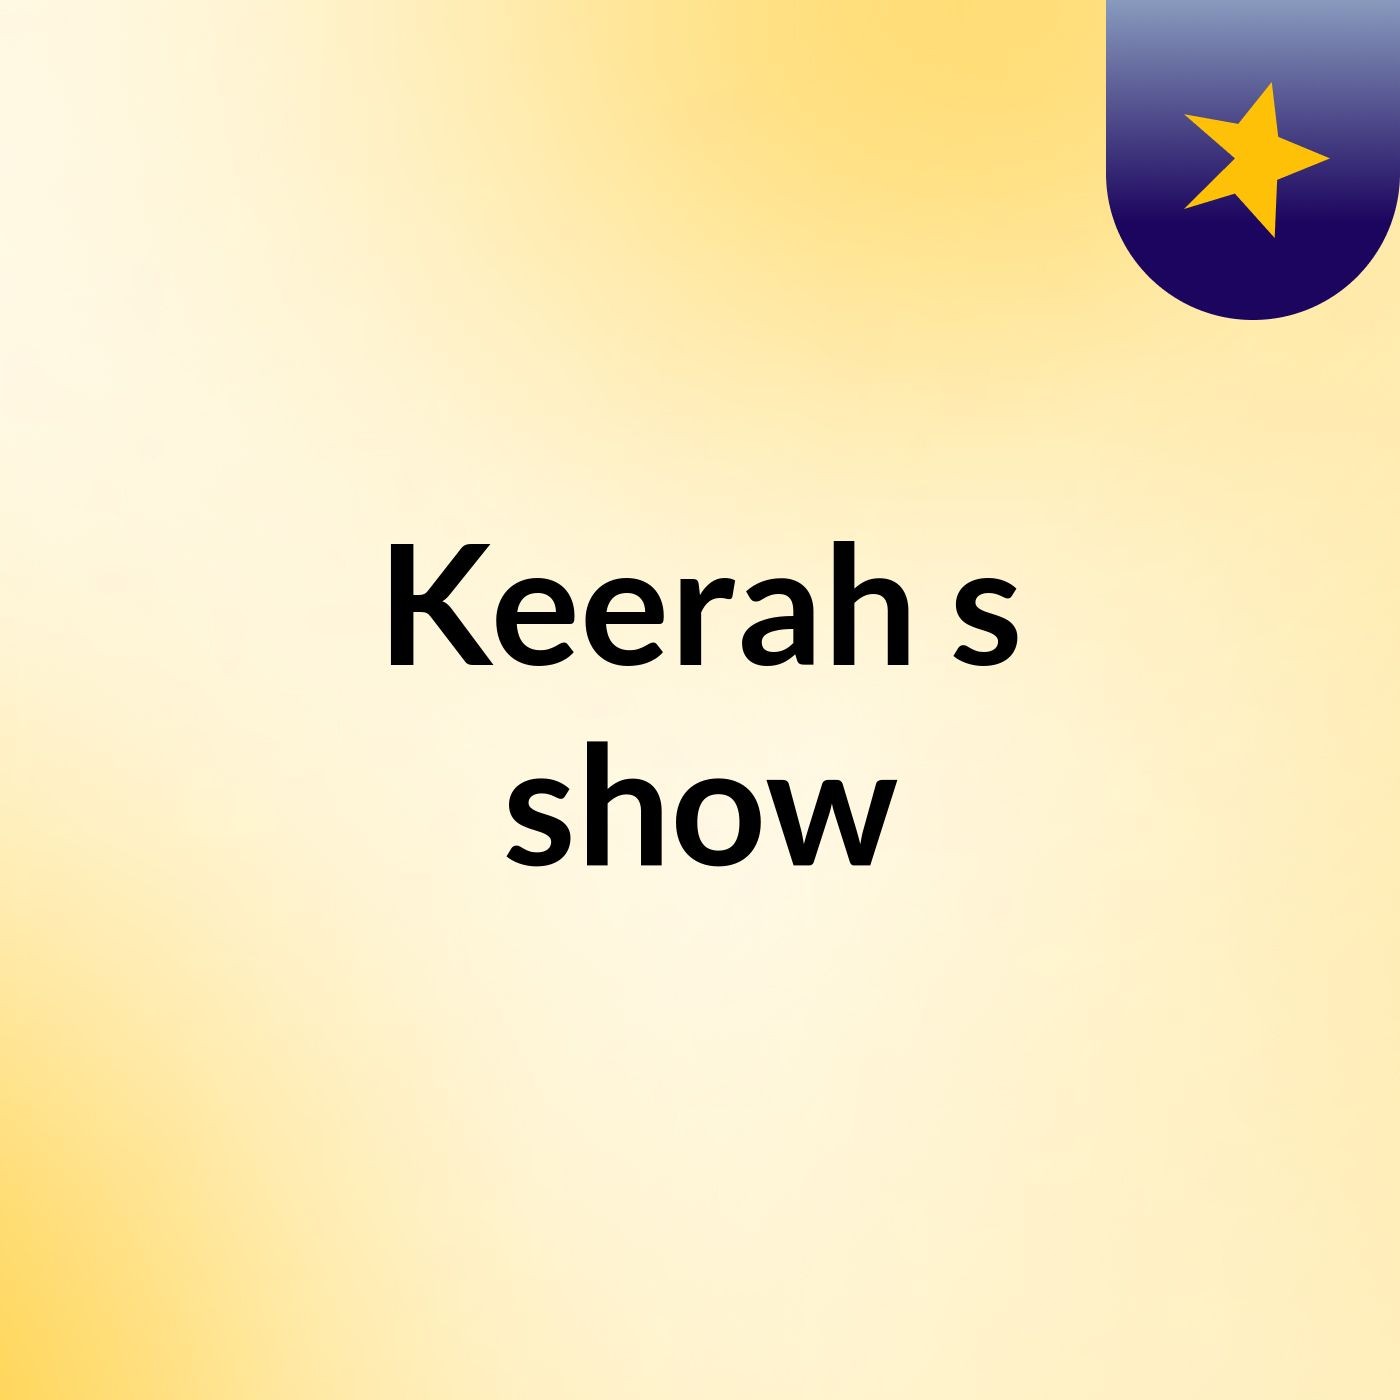 Keerah's show